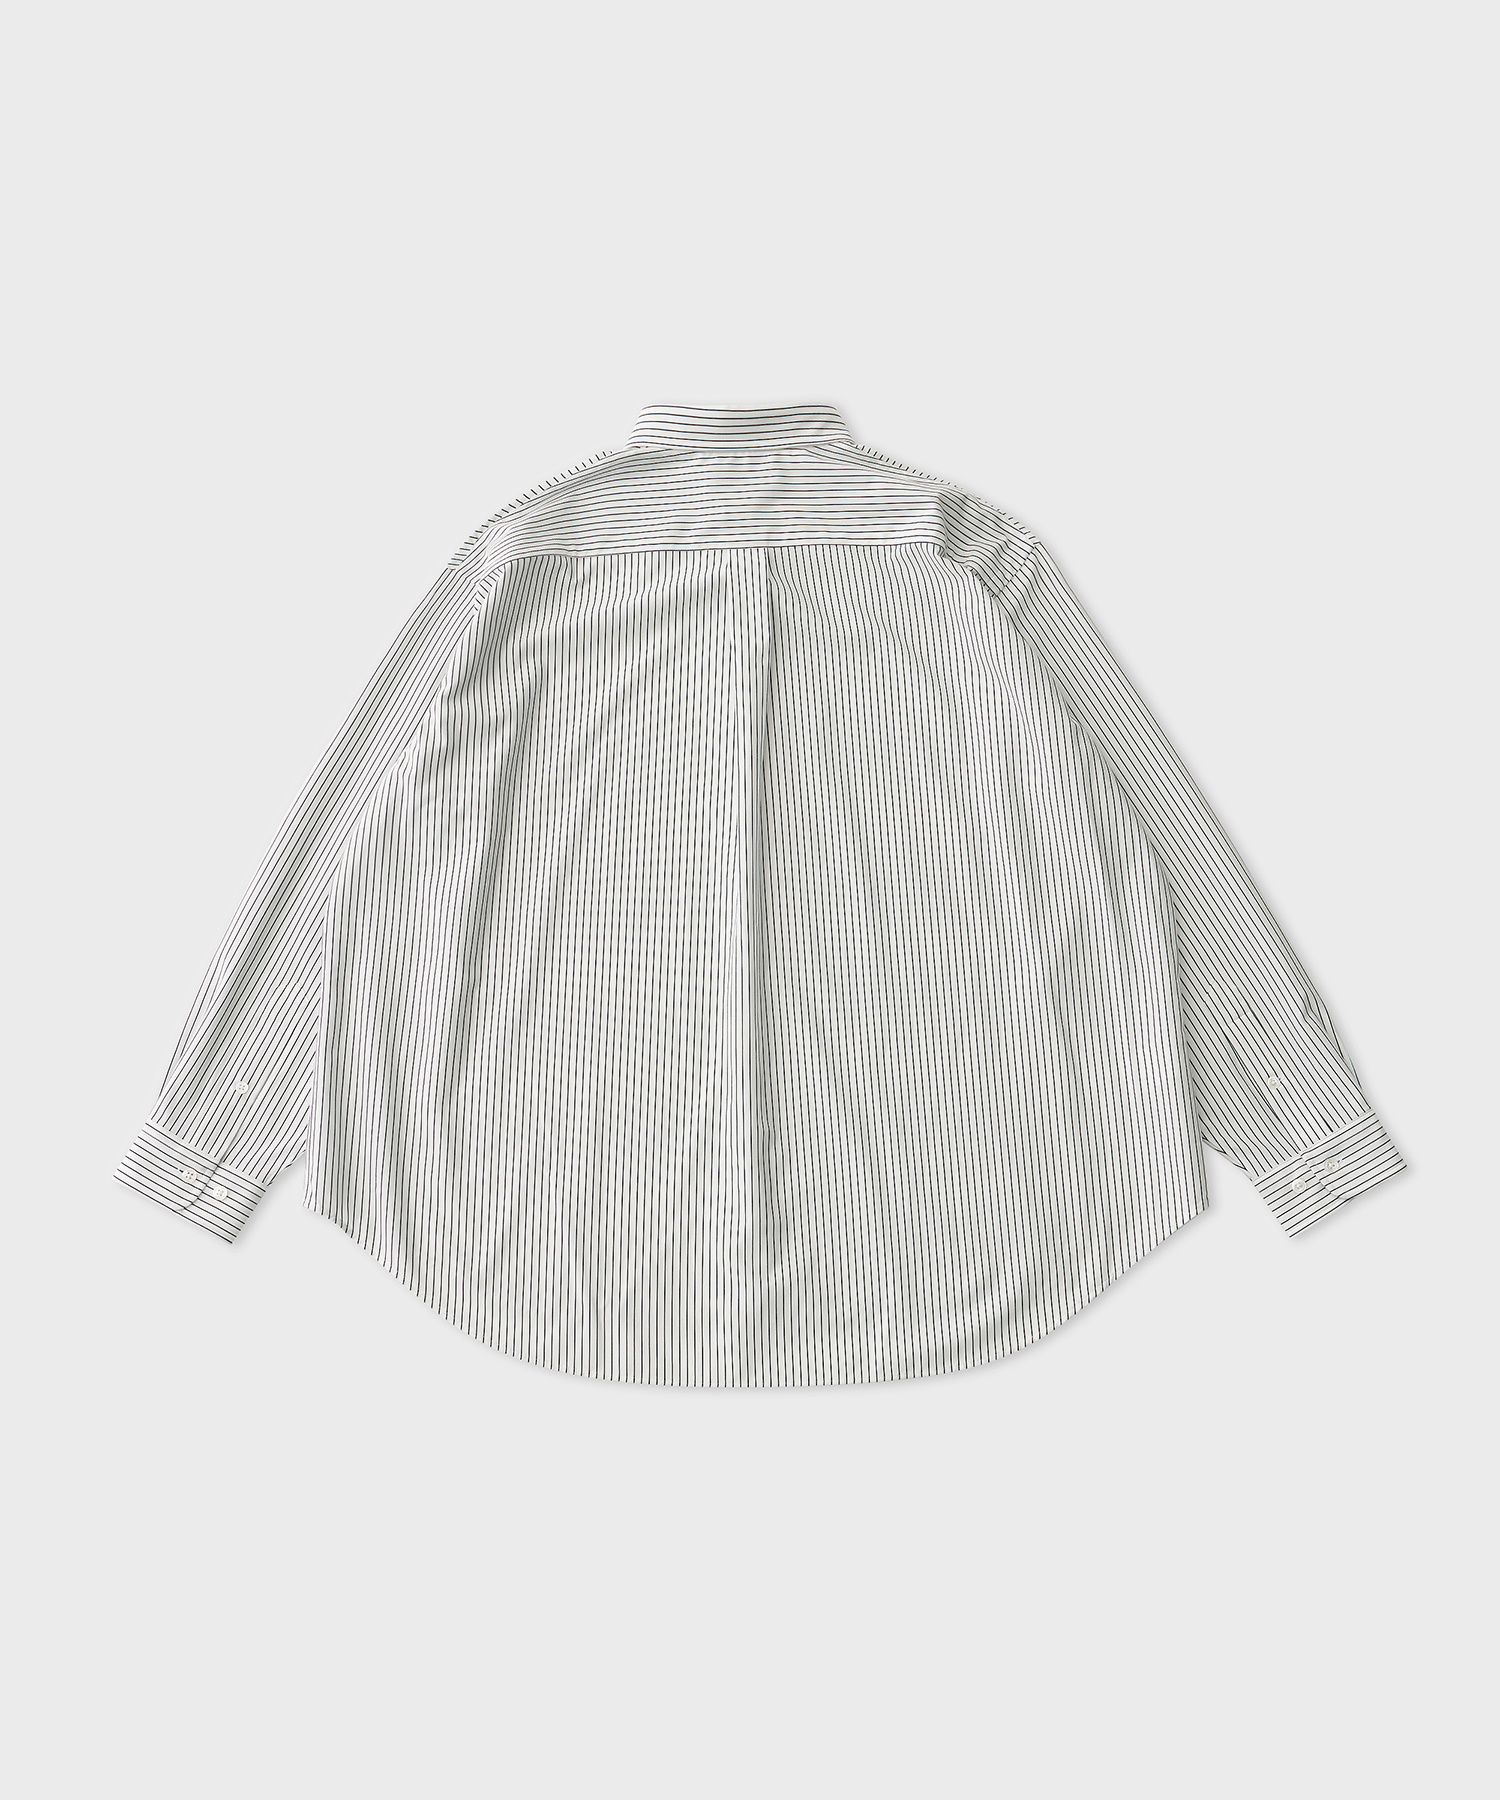 Pencil Stripe Dress Jersey Shirt (White Navy)